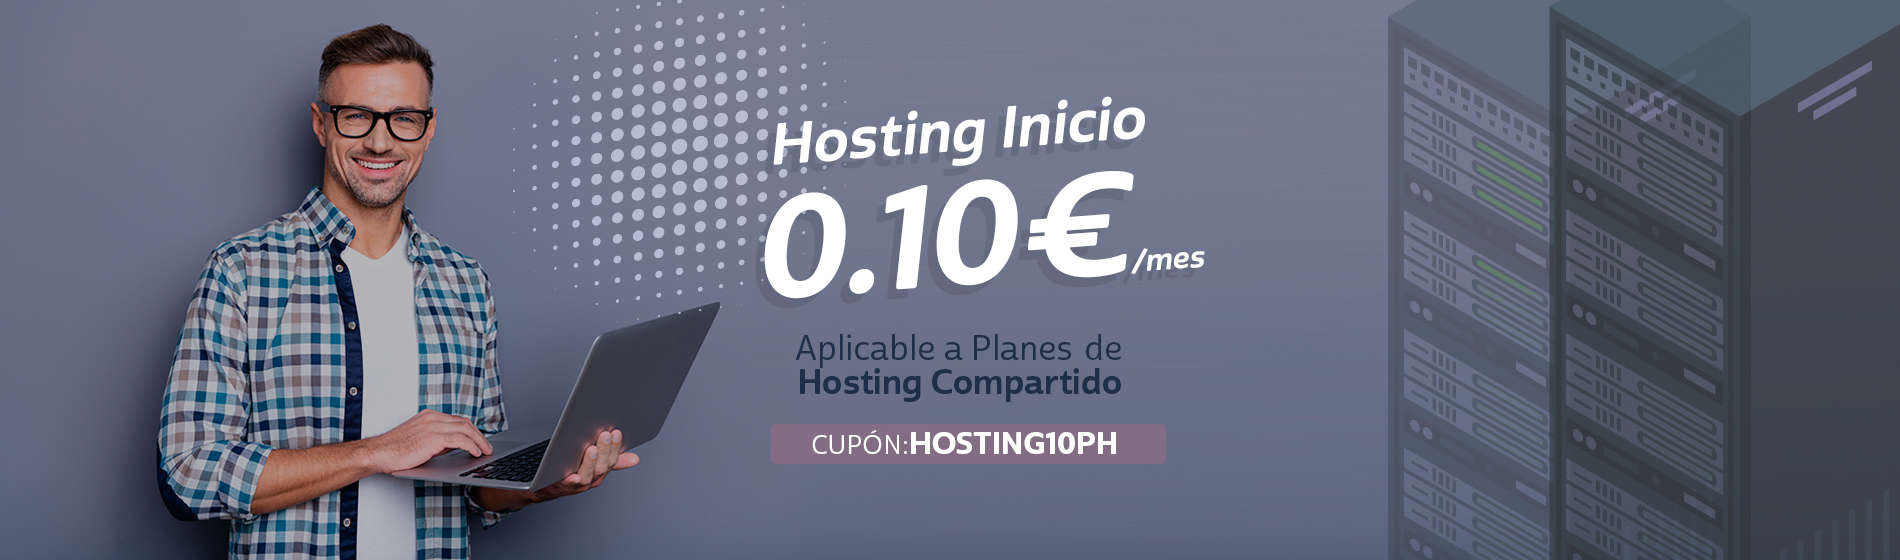 cupon descuento profesional hosting inicio 0,10€